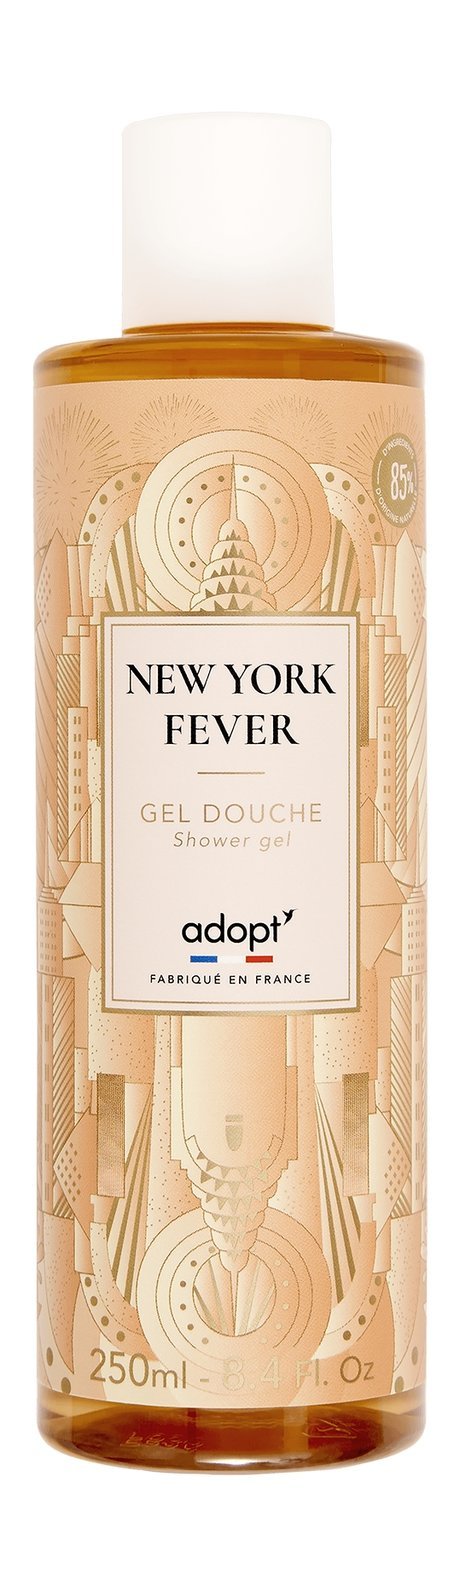 Adopt' New York Fever Shower Gel